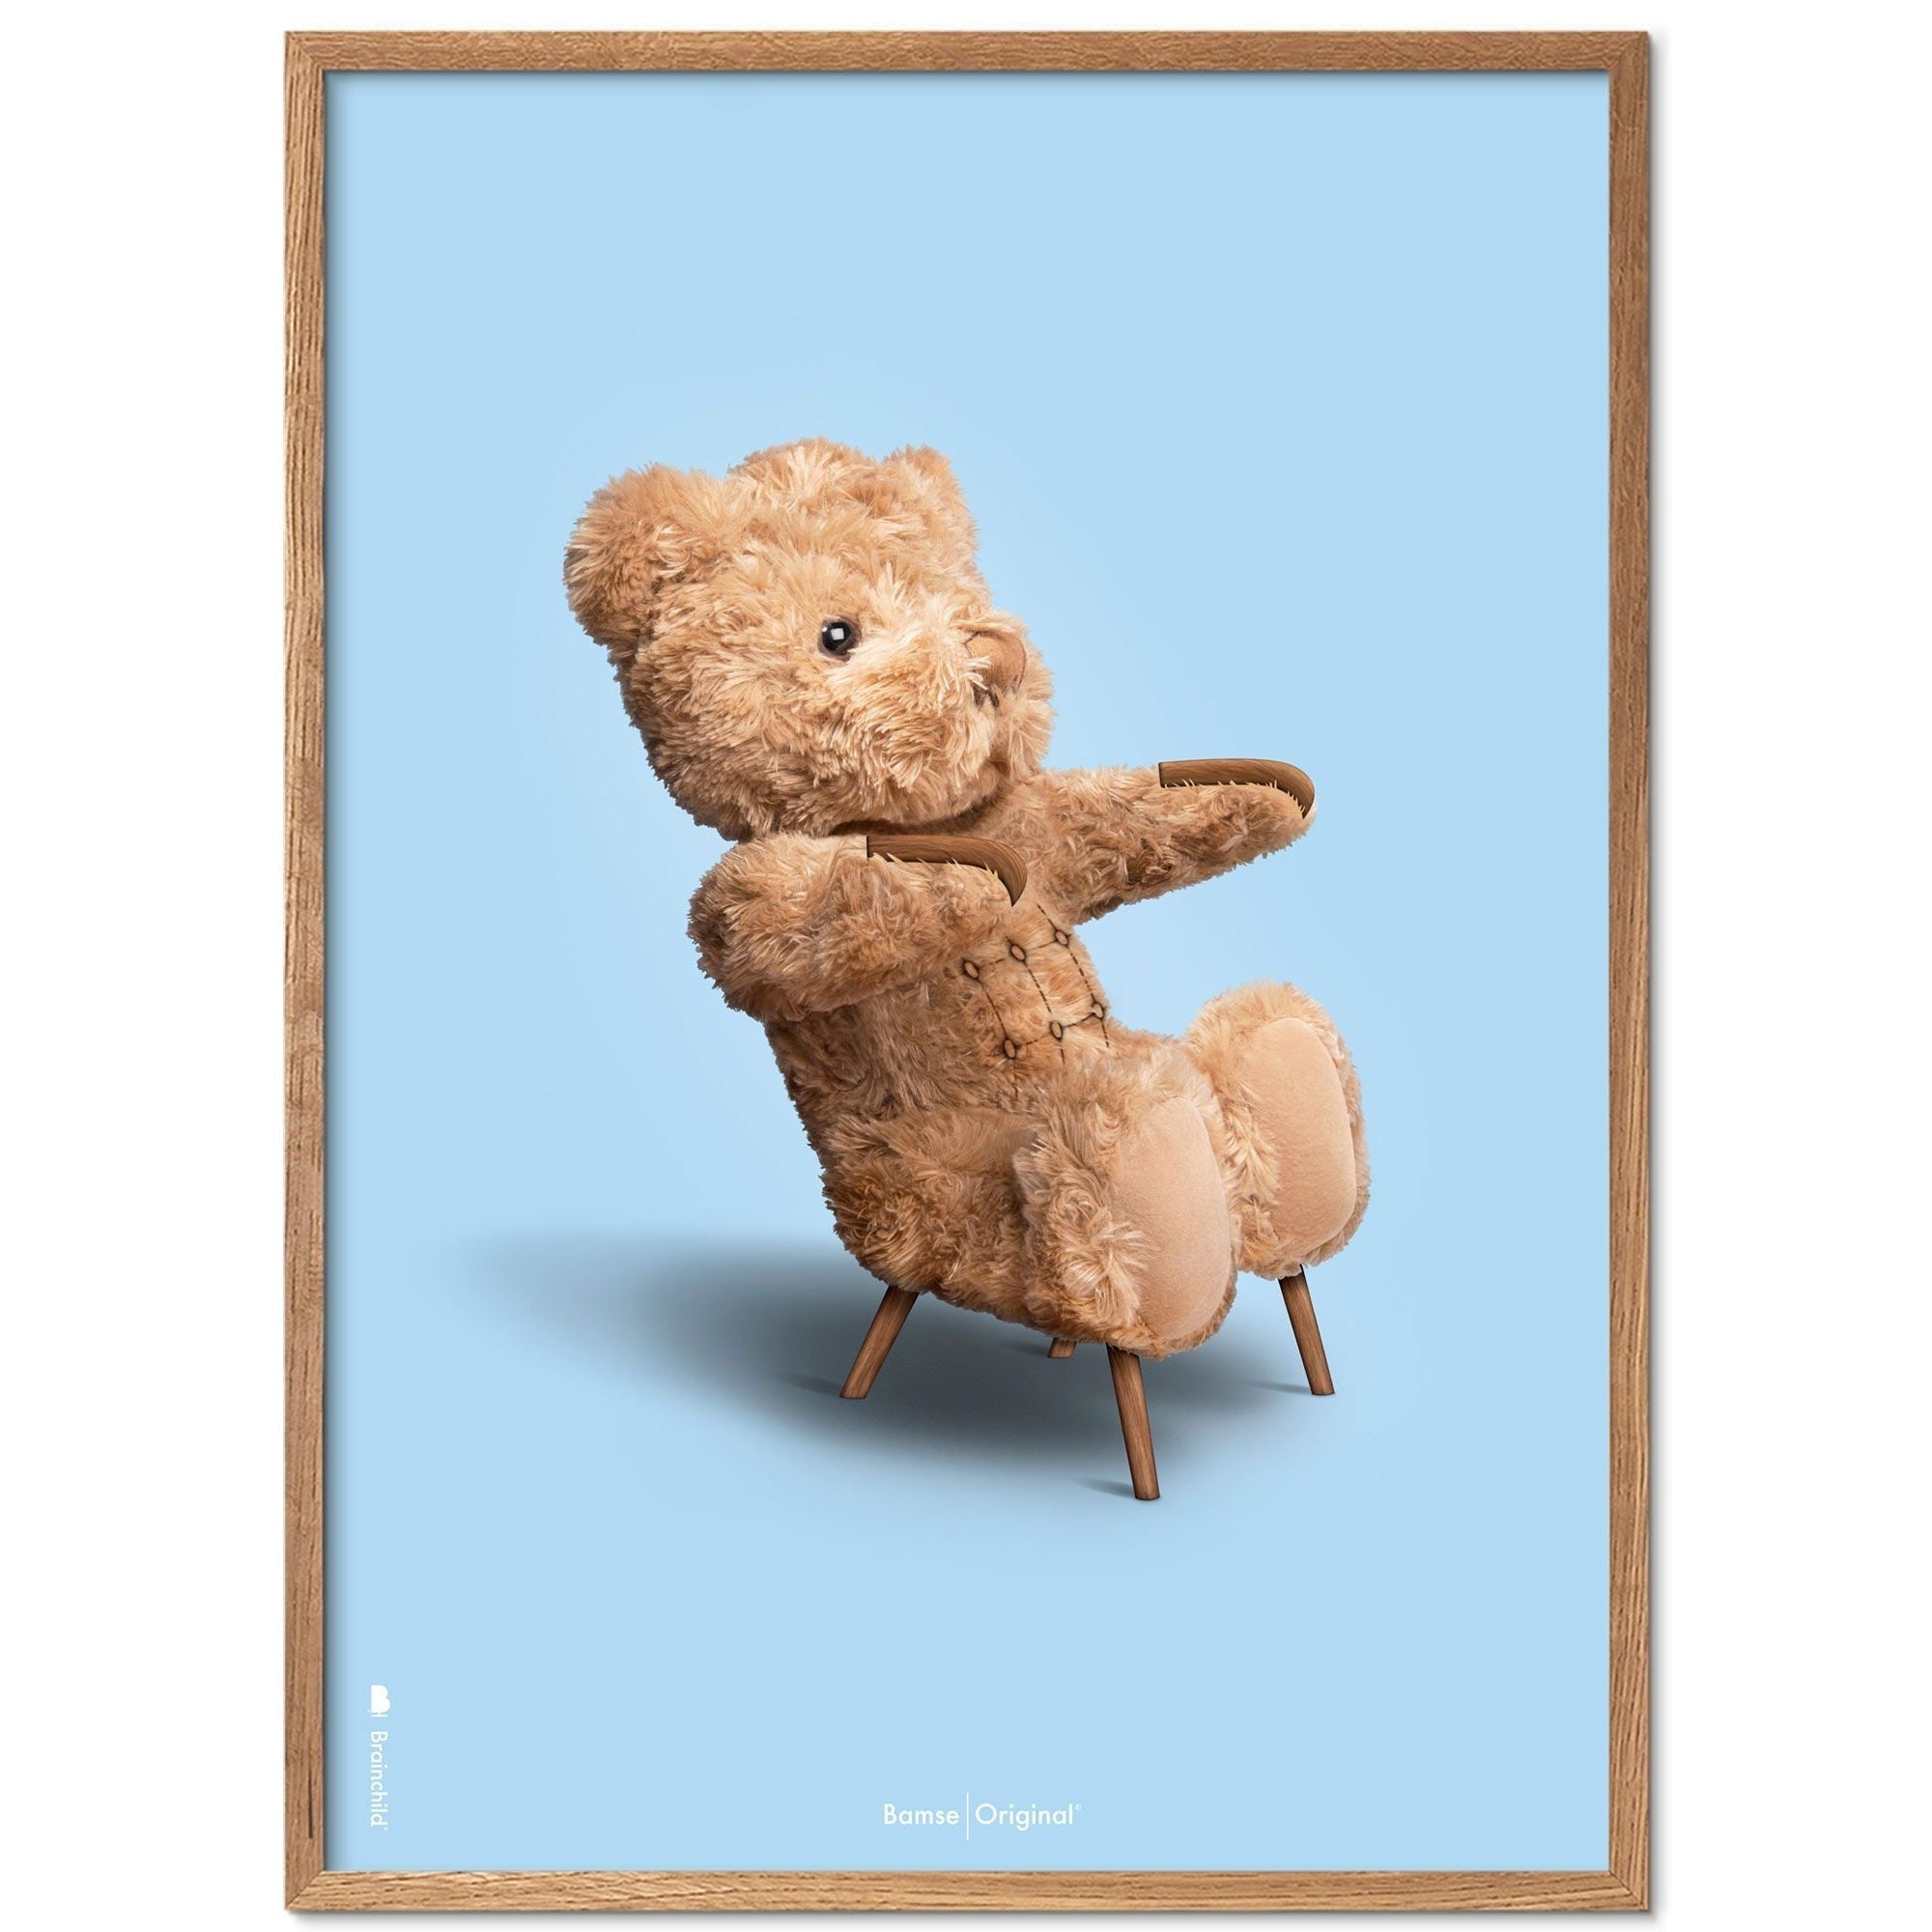 Brainchild Teddy Bear Classic plakát z plakátu vyrobený z světla dřeva 70x100 cm, světle modré pozadí